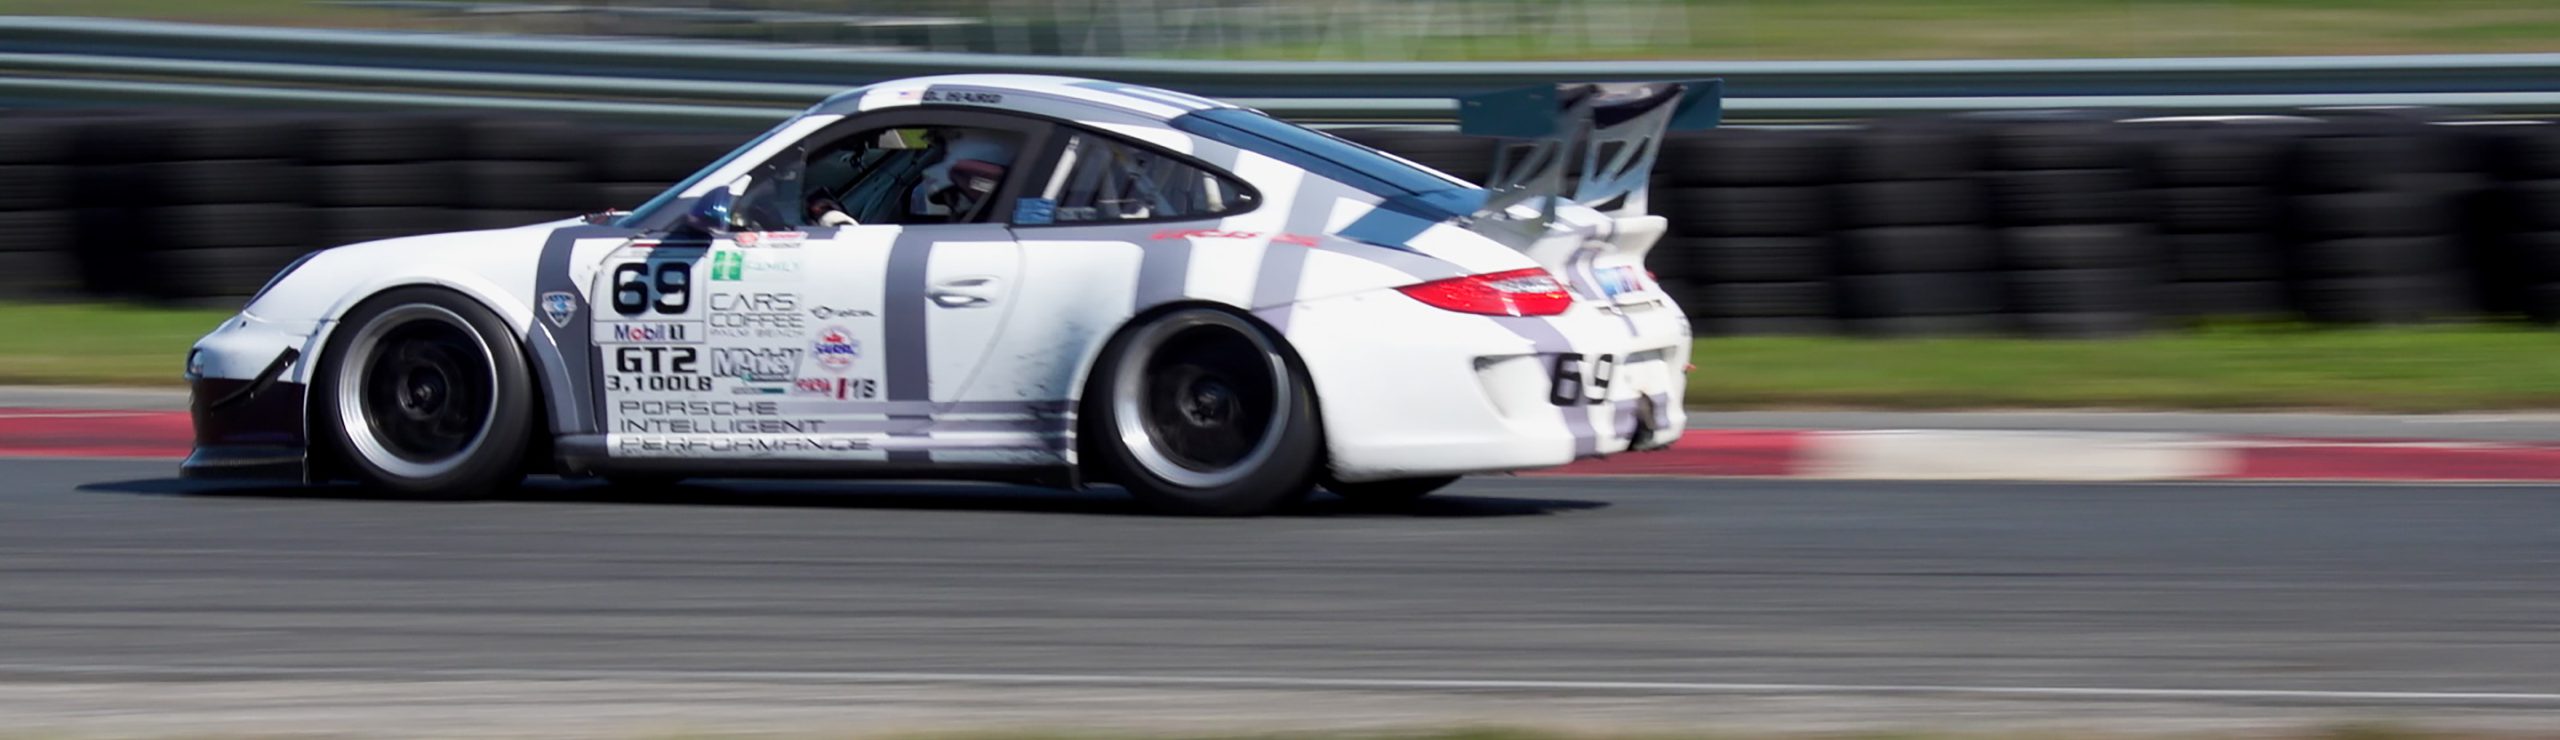 Pure sound of GT2 Porsche